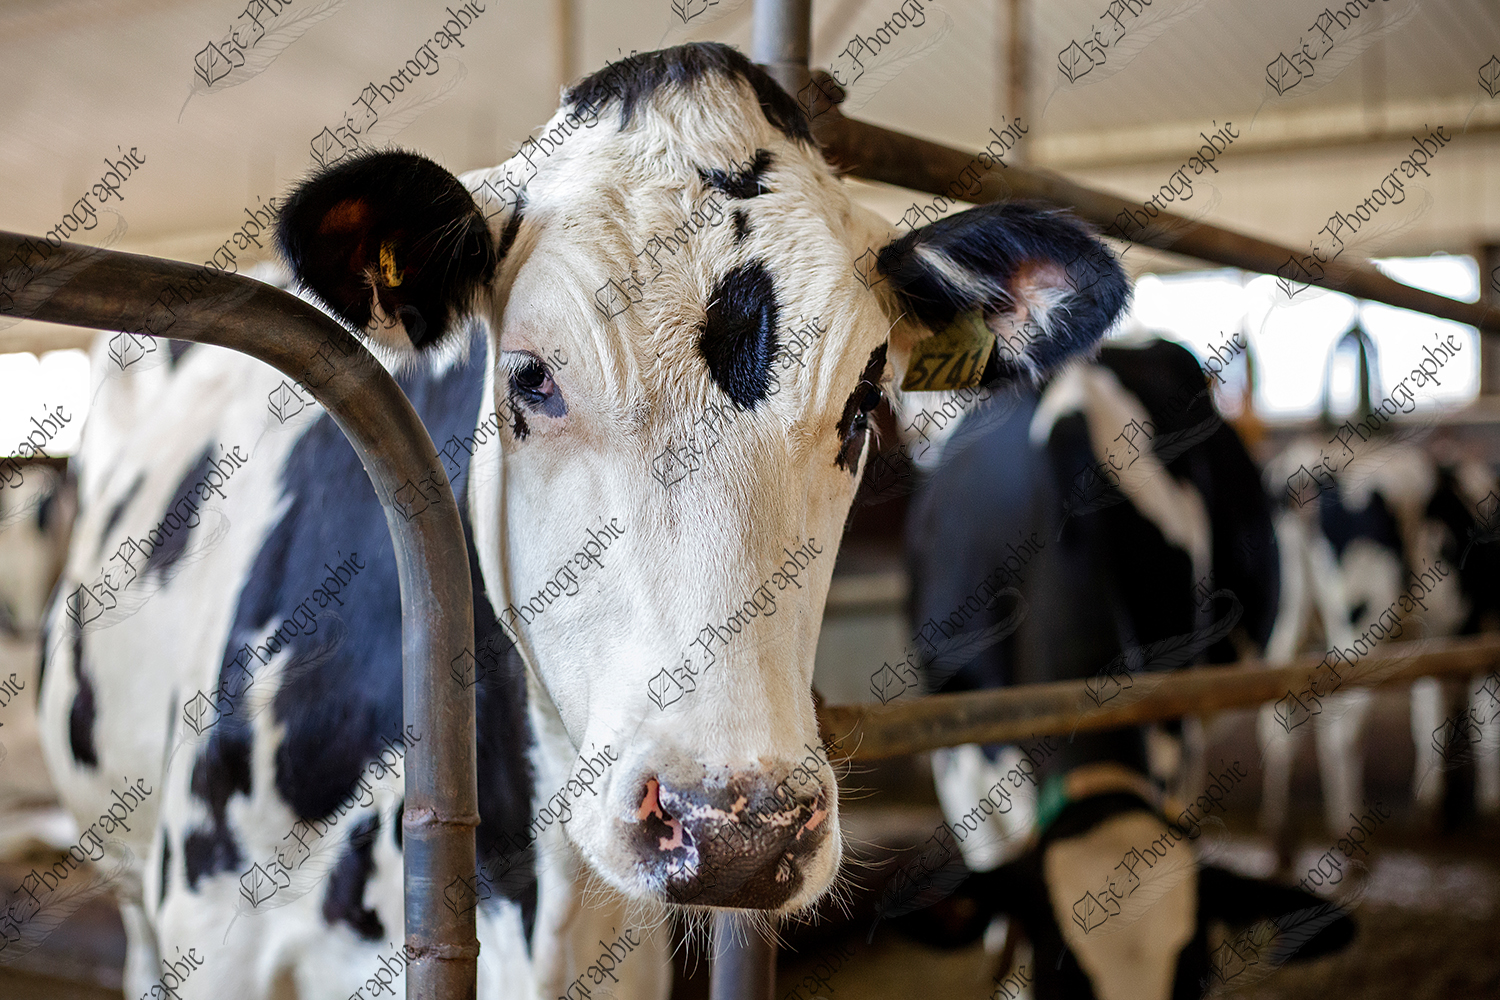 elze_photo_8536_taure_holstein_stabulation_cow_dairy